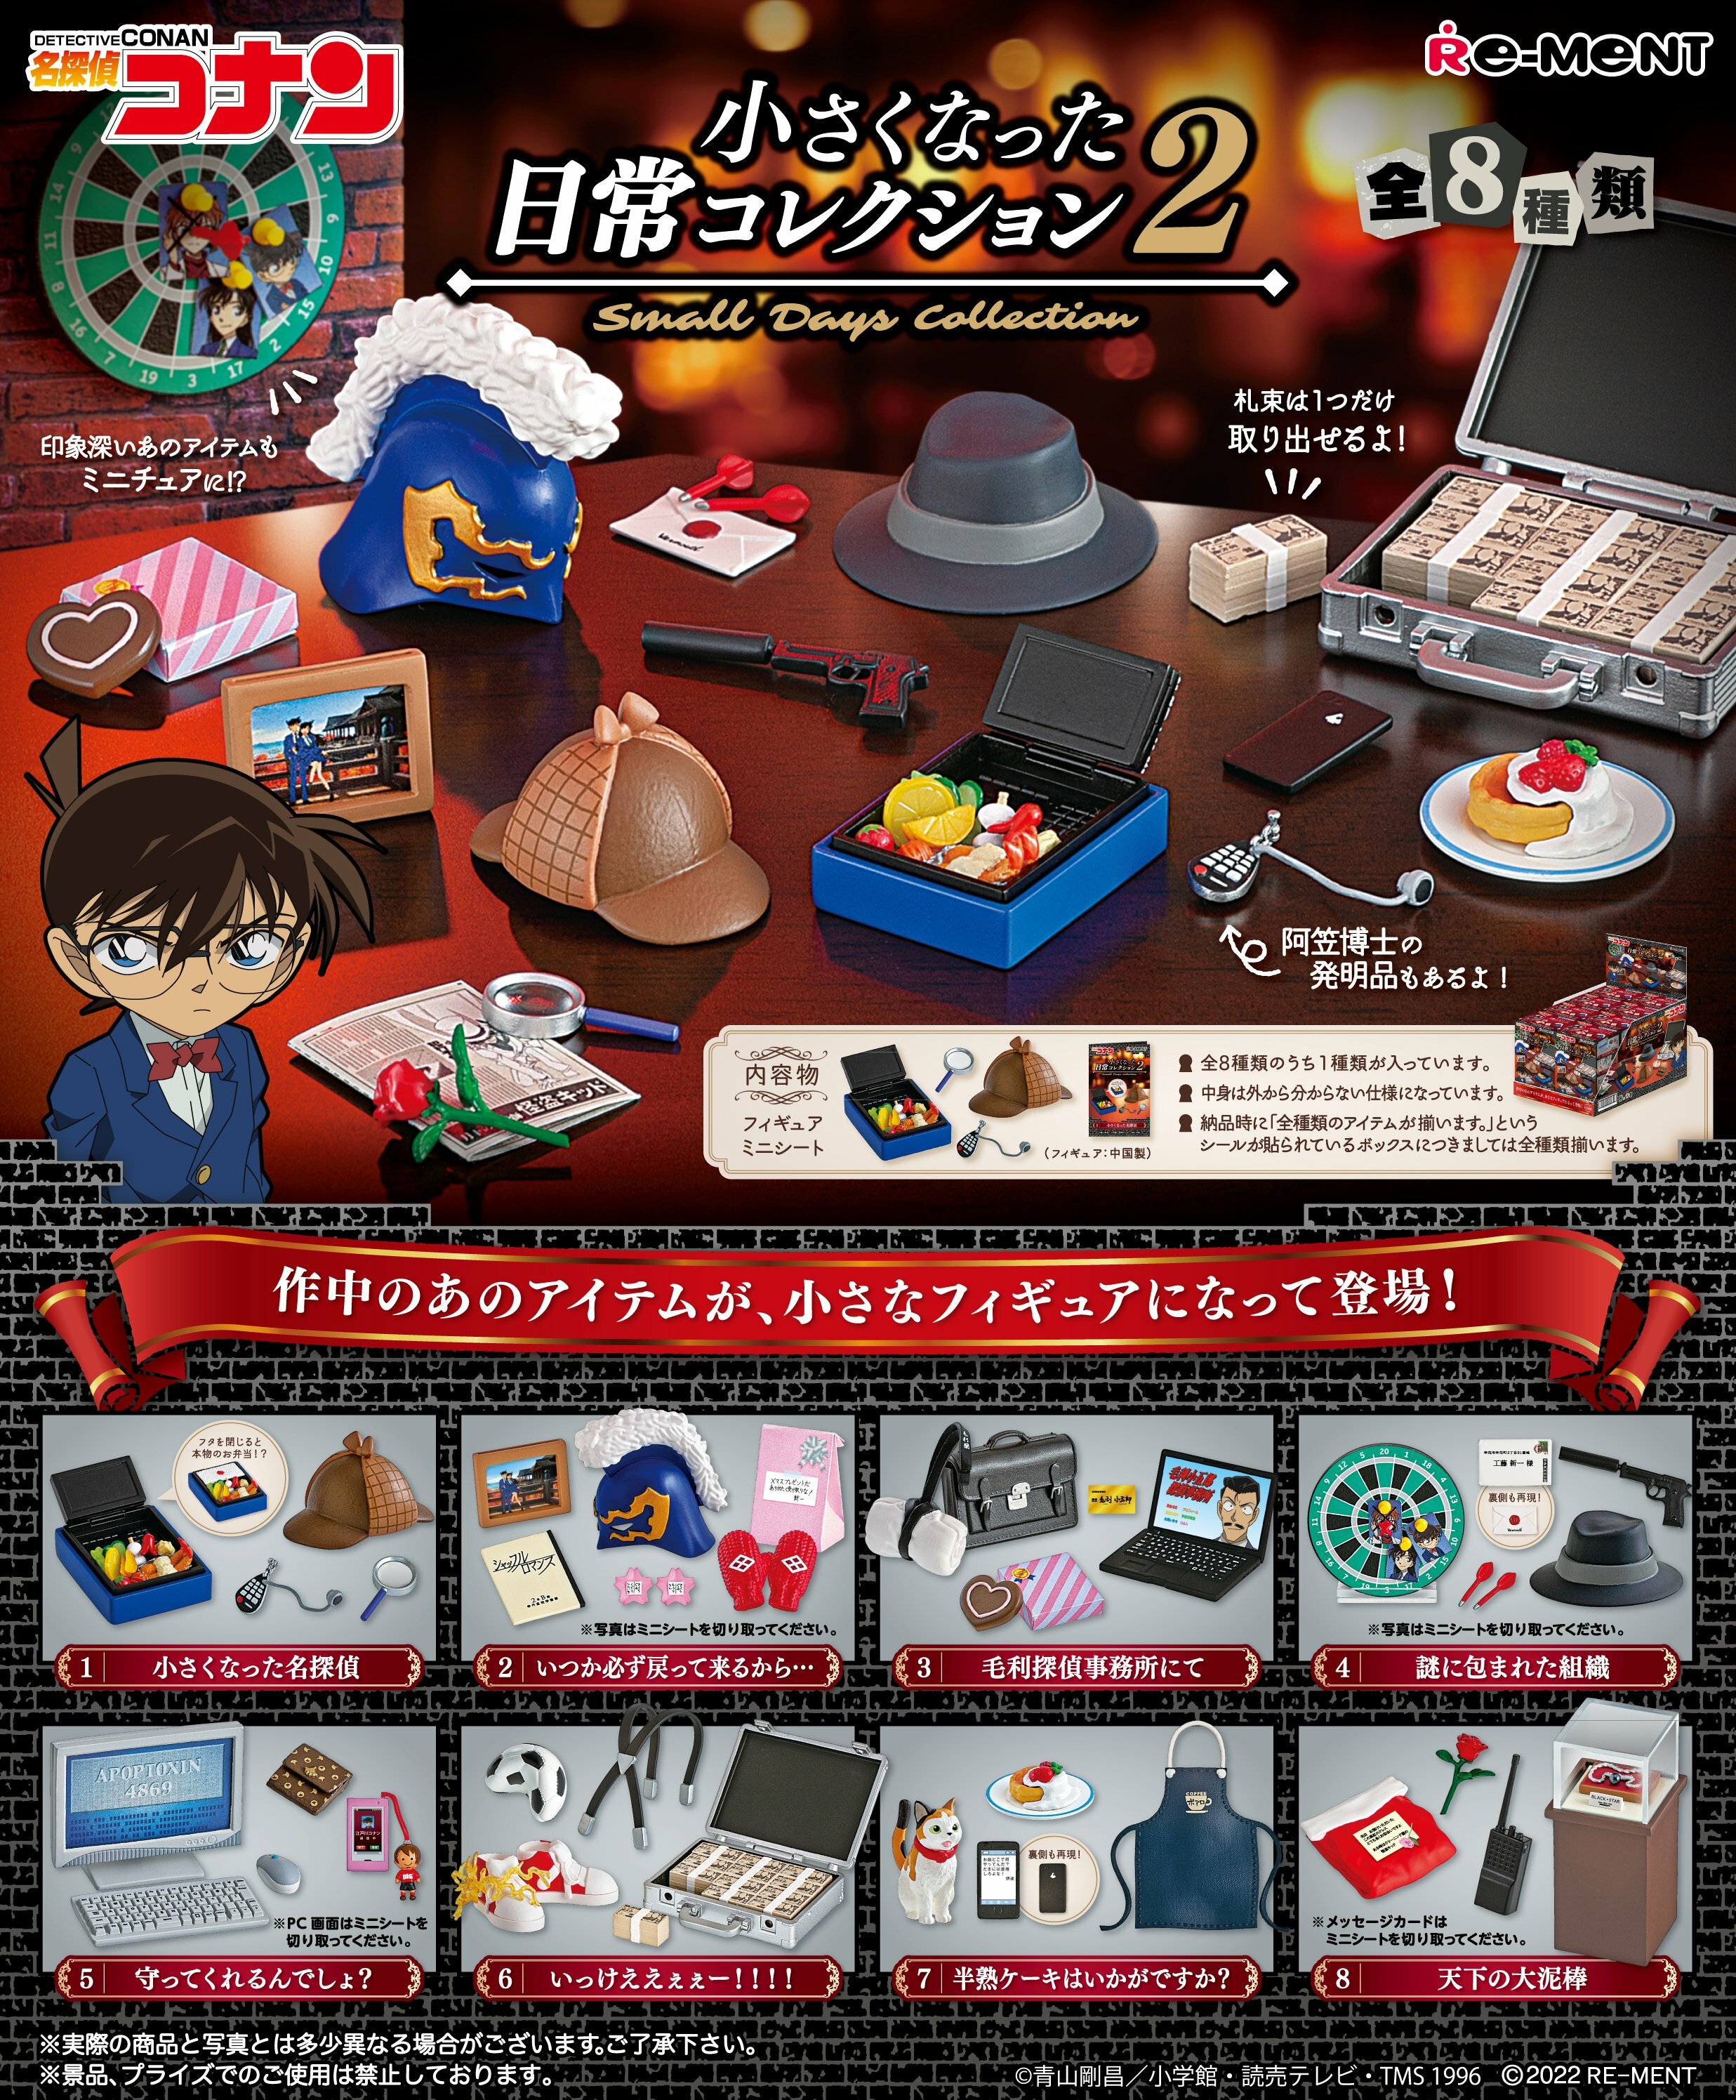 Details about   Re-Ment Rement Miniature Japan Detective Conan Room Furniture set # 8 Bag 